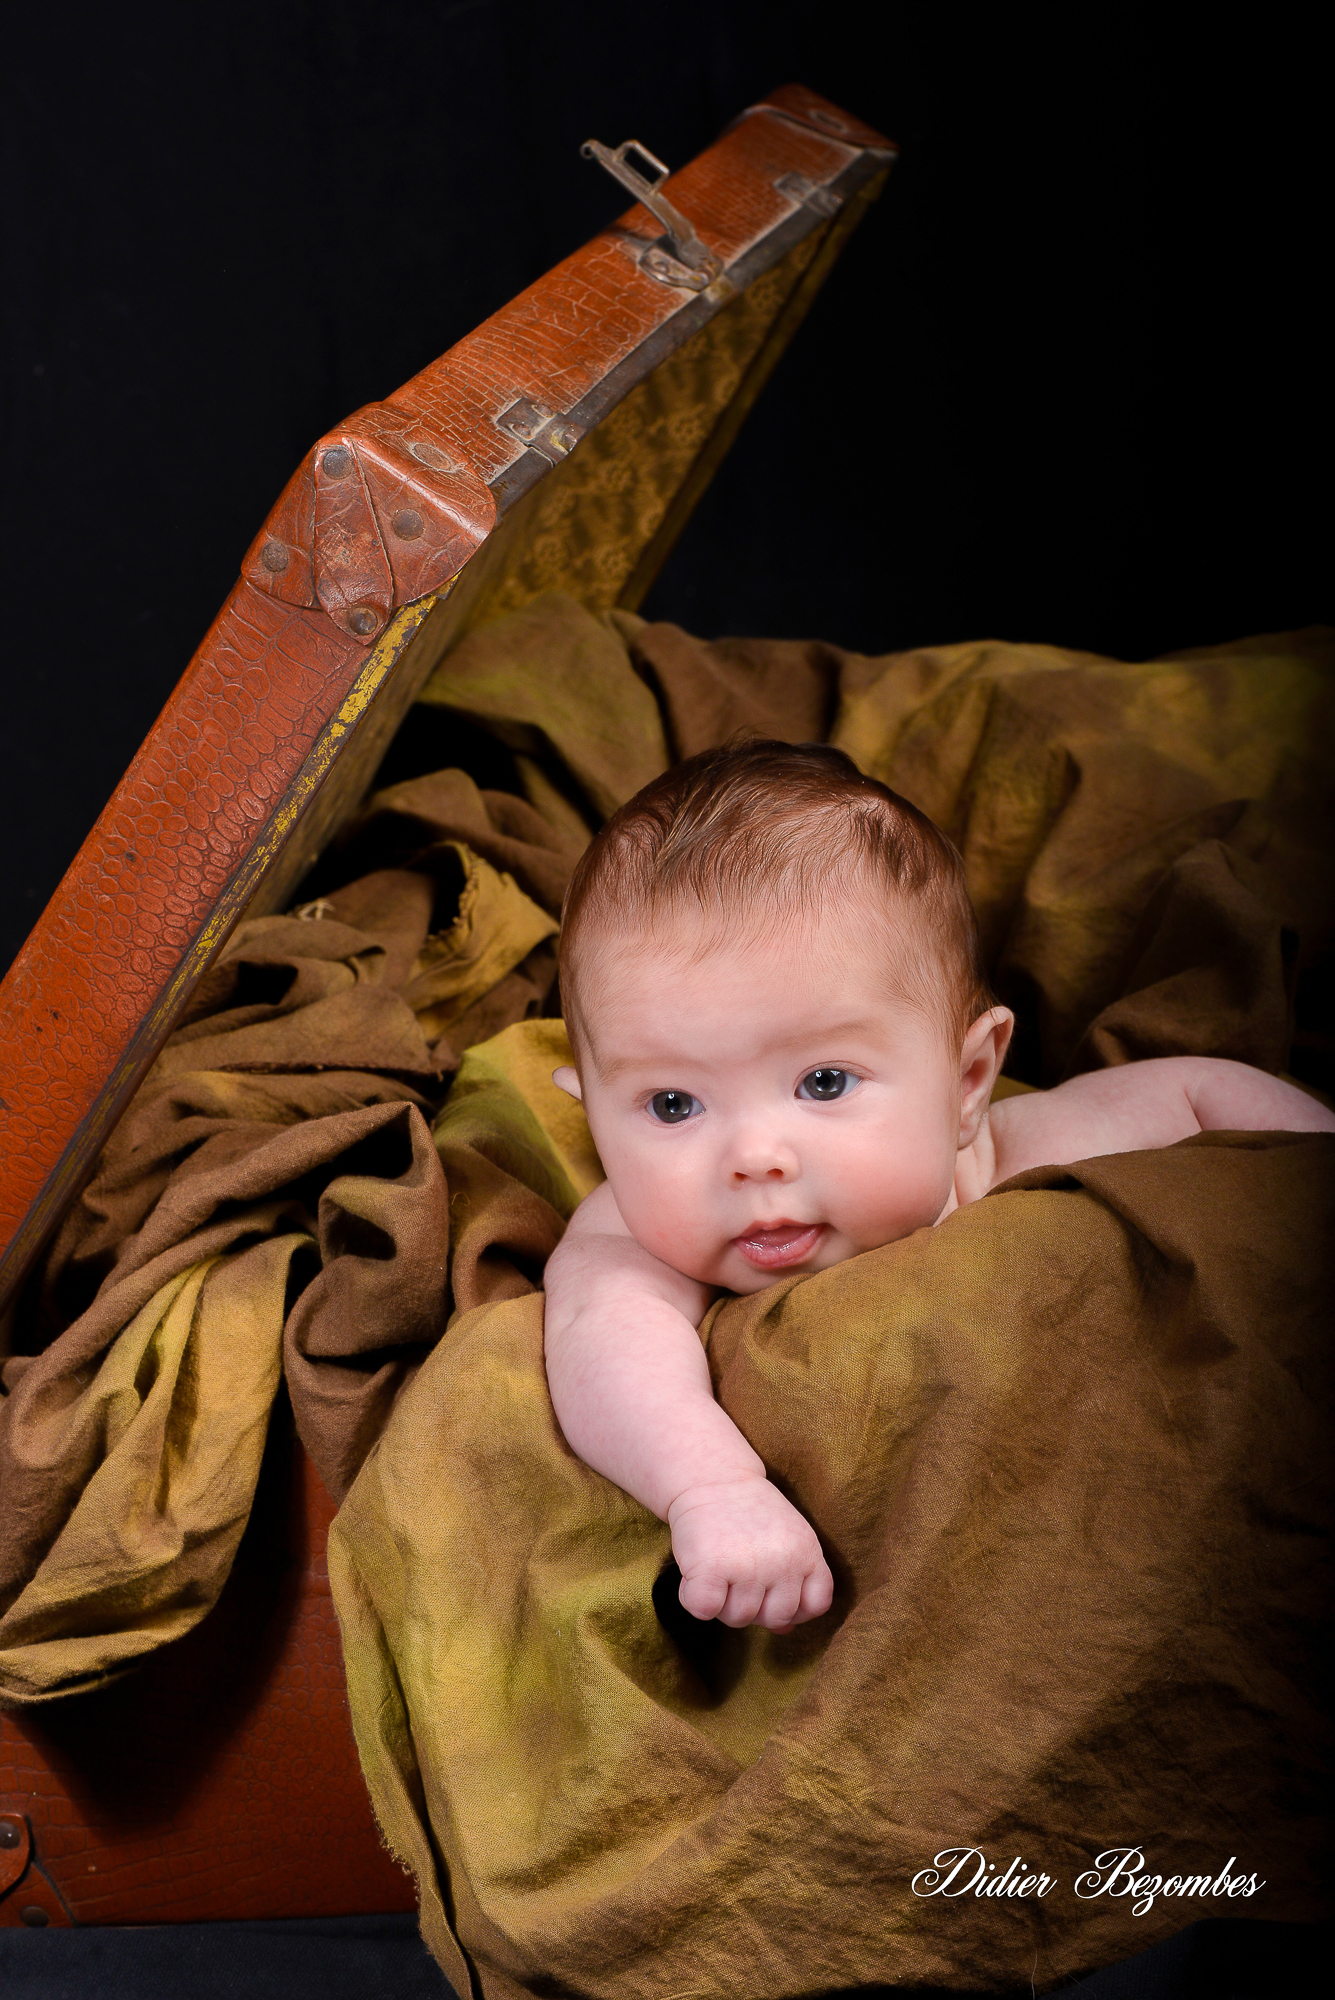 portrait-de-bébé-dans-une-valise-photos studio original-en-couleur-sur-fond-noir-photographe-Didier-Bezombes